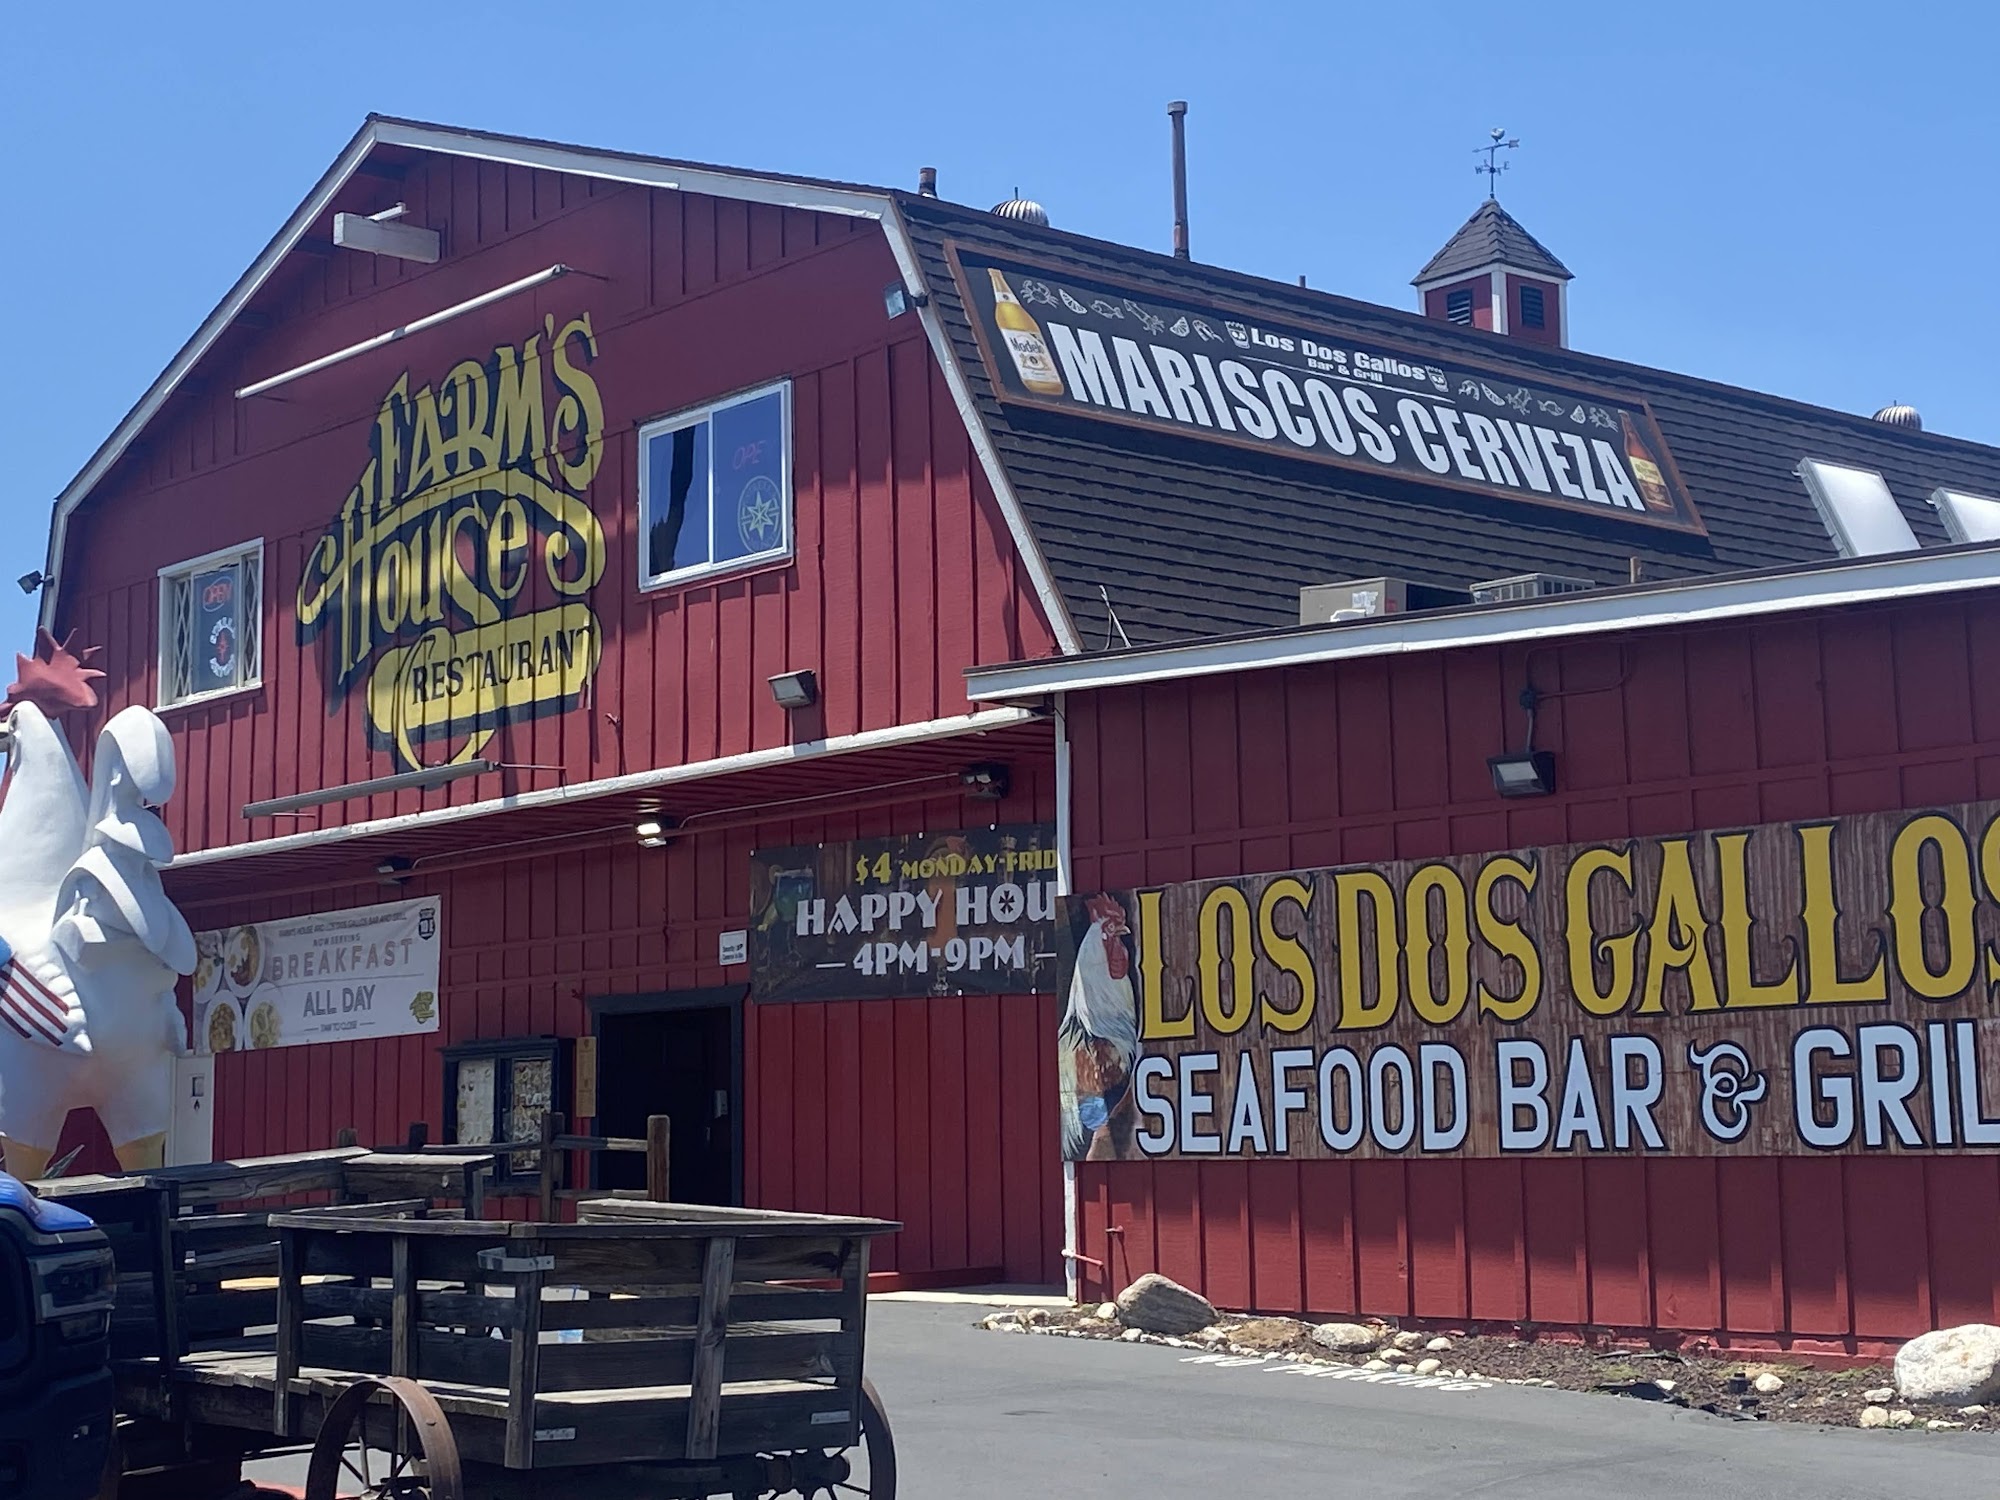 Los Dos Gallos Bar & Grill & Seafood